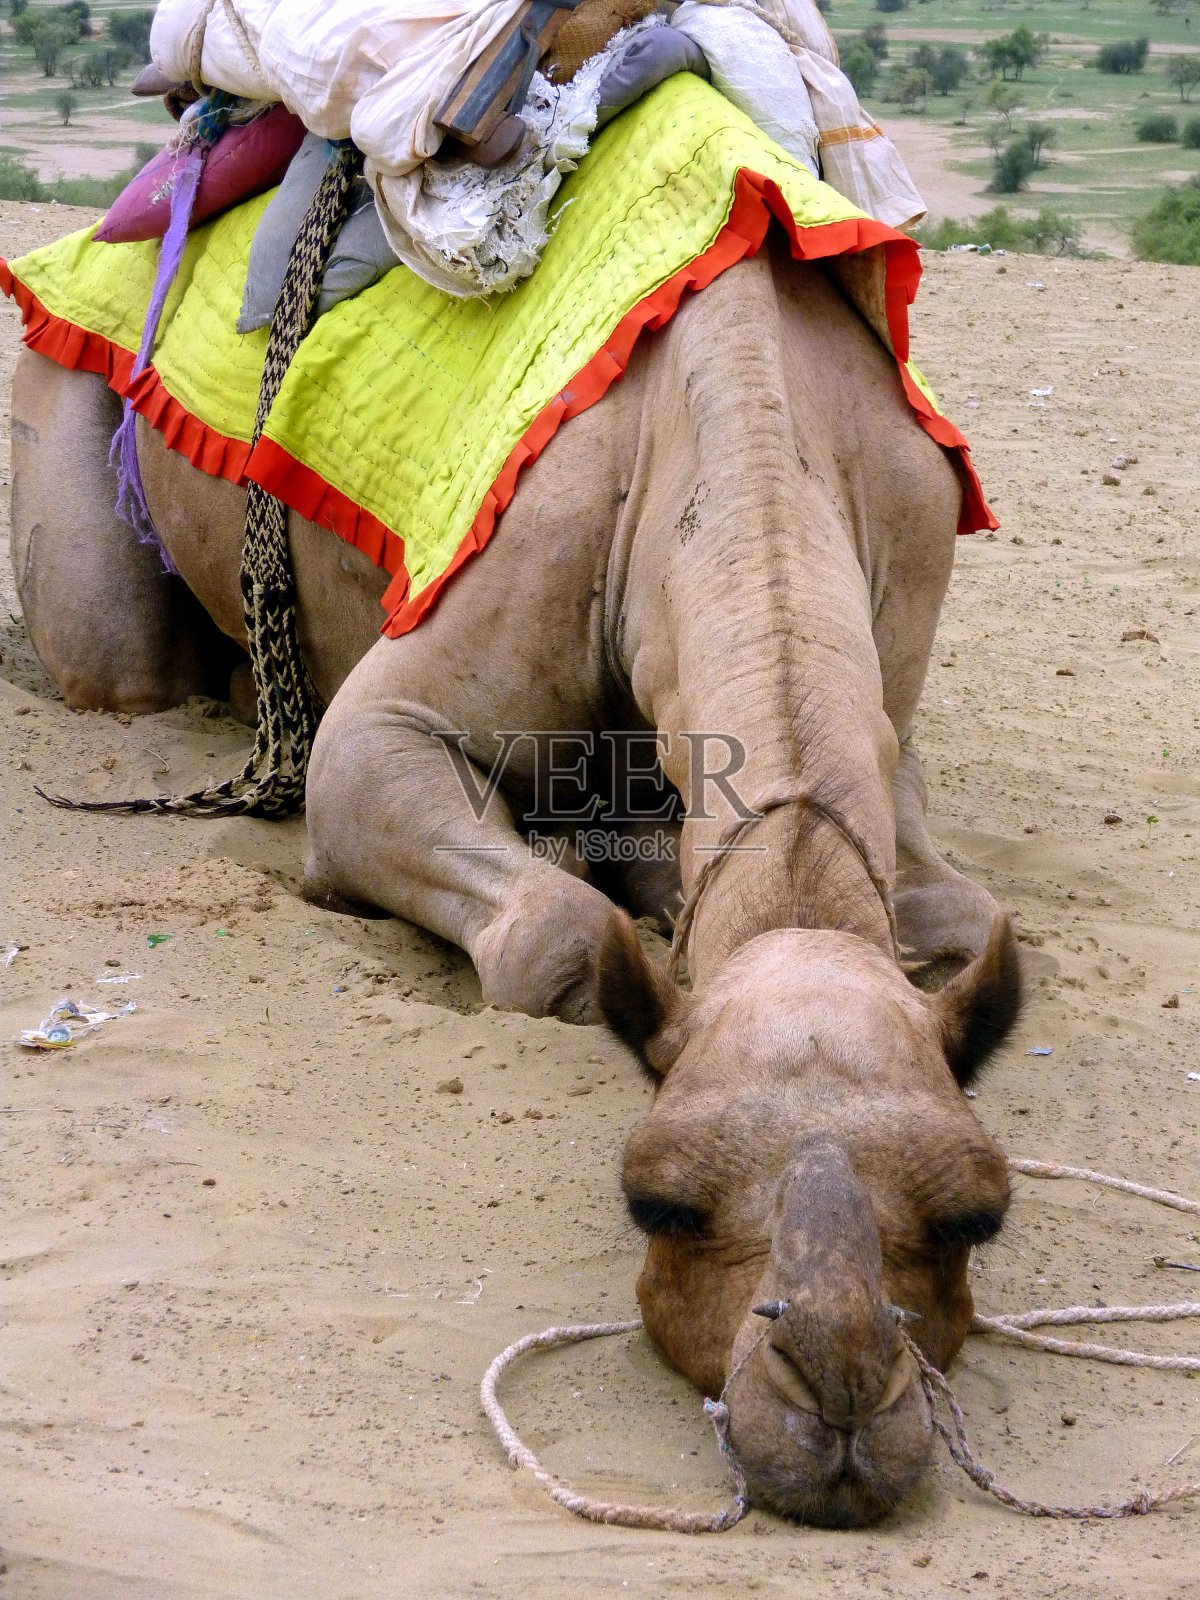 印度拉贾斯坦邦贾伊萨尔梅尔附近，一只蹲在萨姆沙丘的骆驼的嘴部特写照片摄影图片